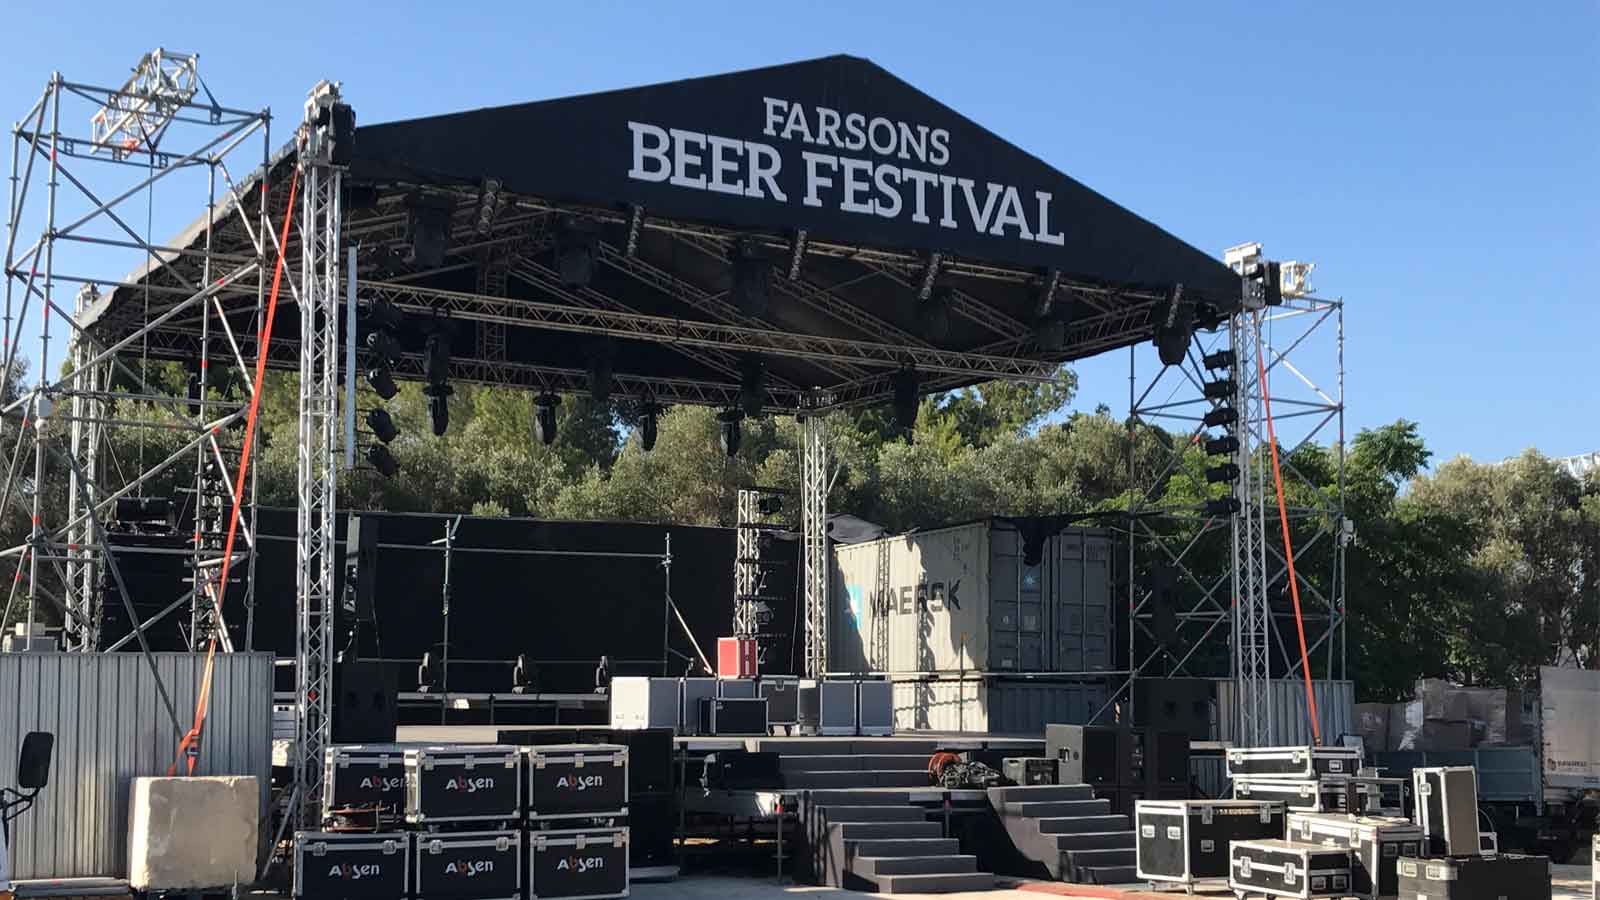 The Farsons Beer Festival kicks off tonight